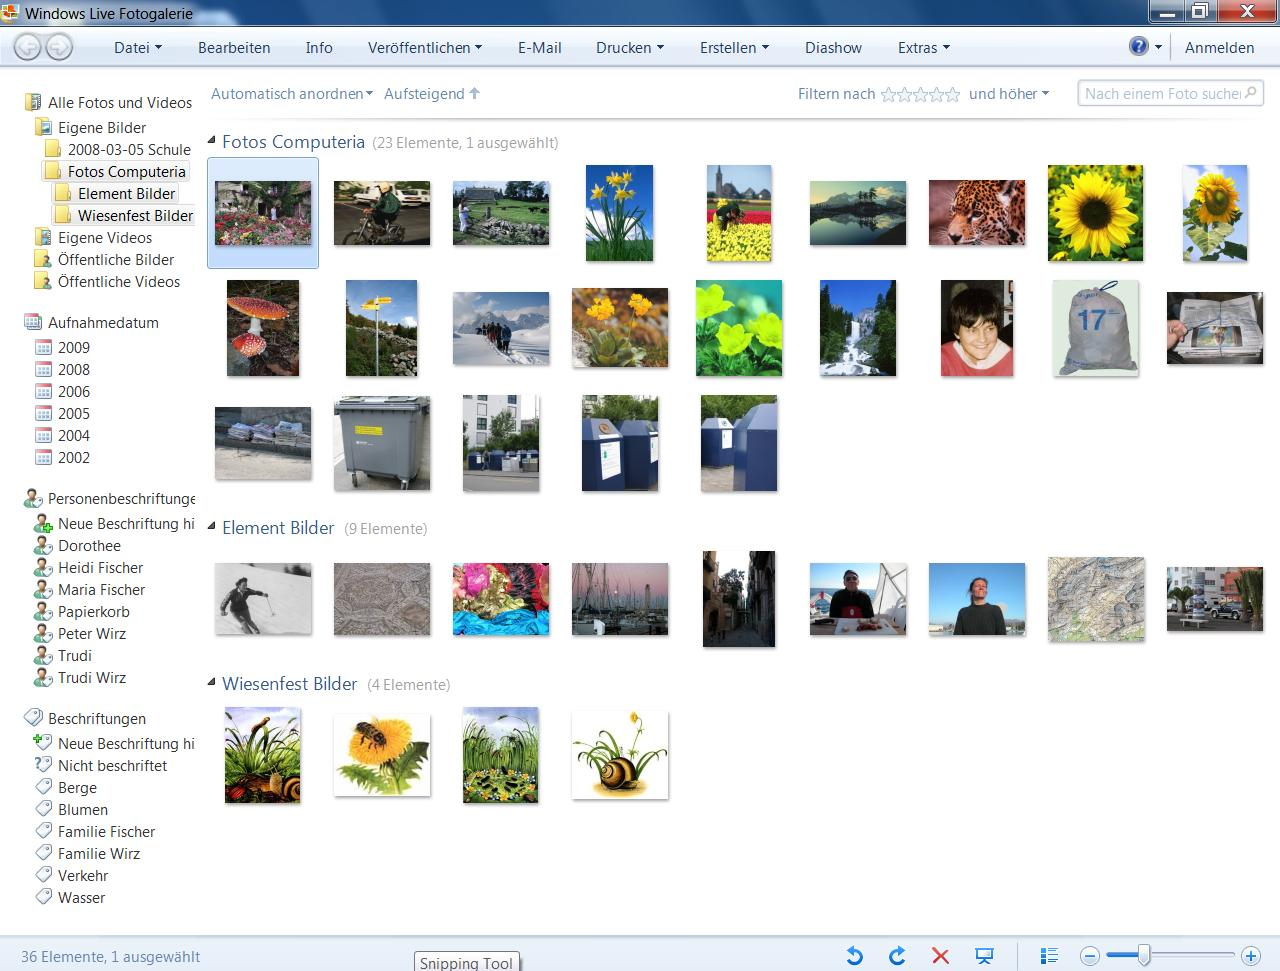 Windows Live Fotogalerie Anzeige nach Ordner Aufnahmedatum Personen Beschriftungen Filtern nach Sternen Kein Katalog,